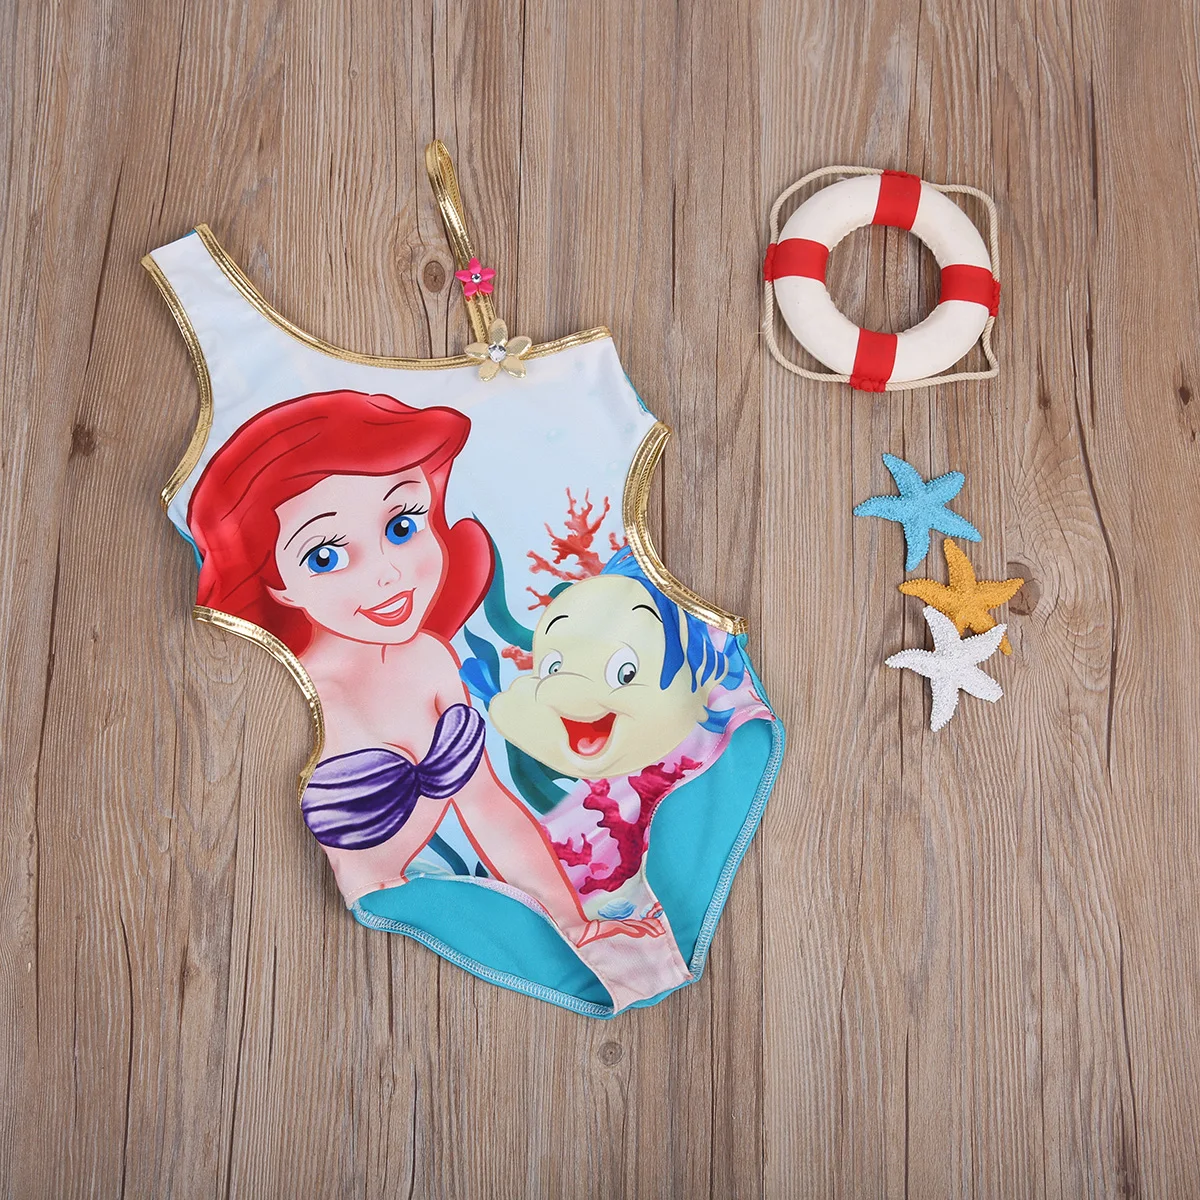 Цельный купальник с растительным узором Русалочки для маленьких девочек, купальные костюмы на одно плечо, пляжная одежда для детей, купальные костюмы